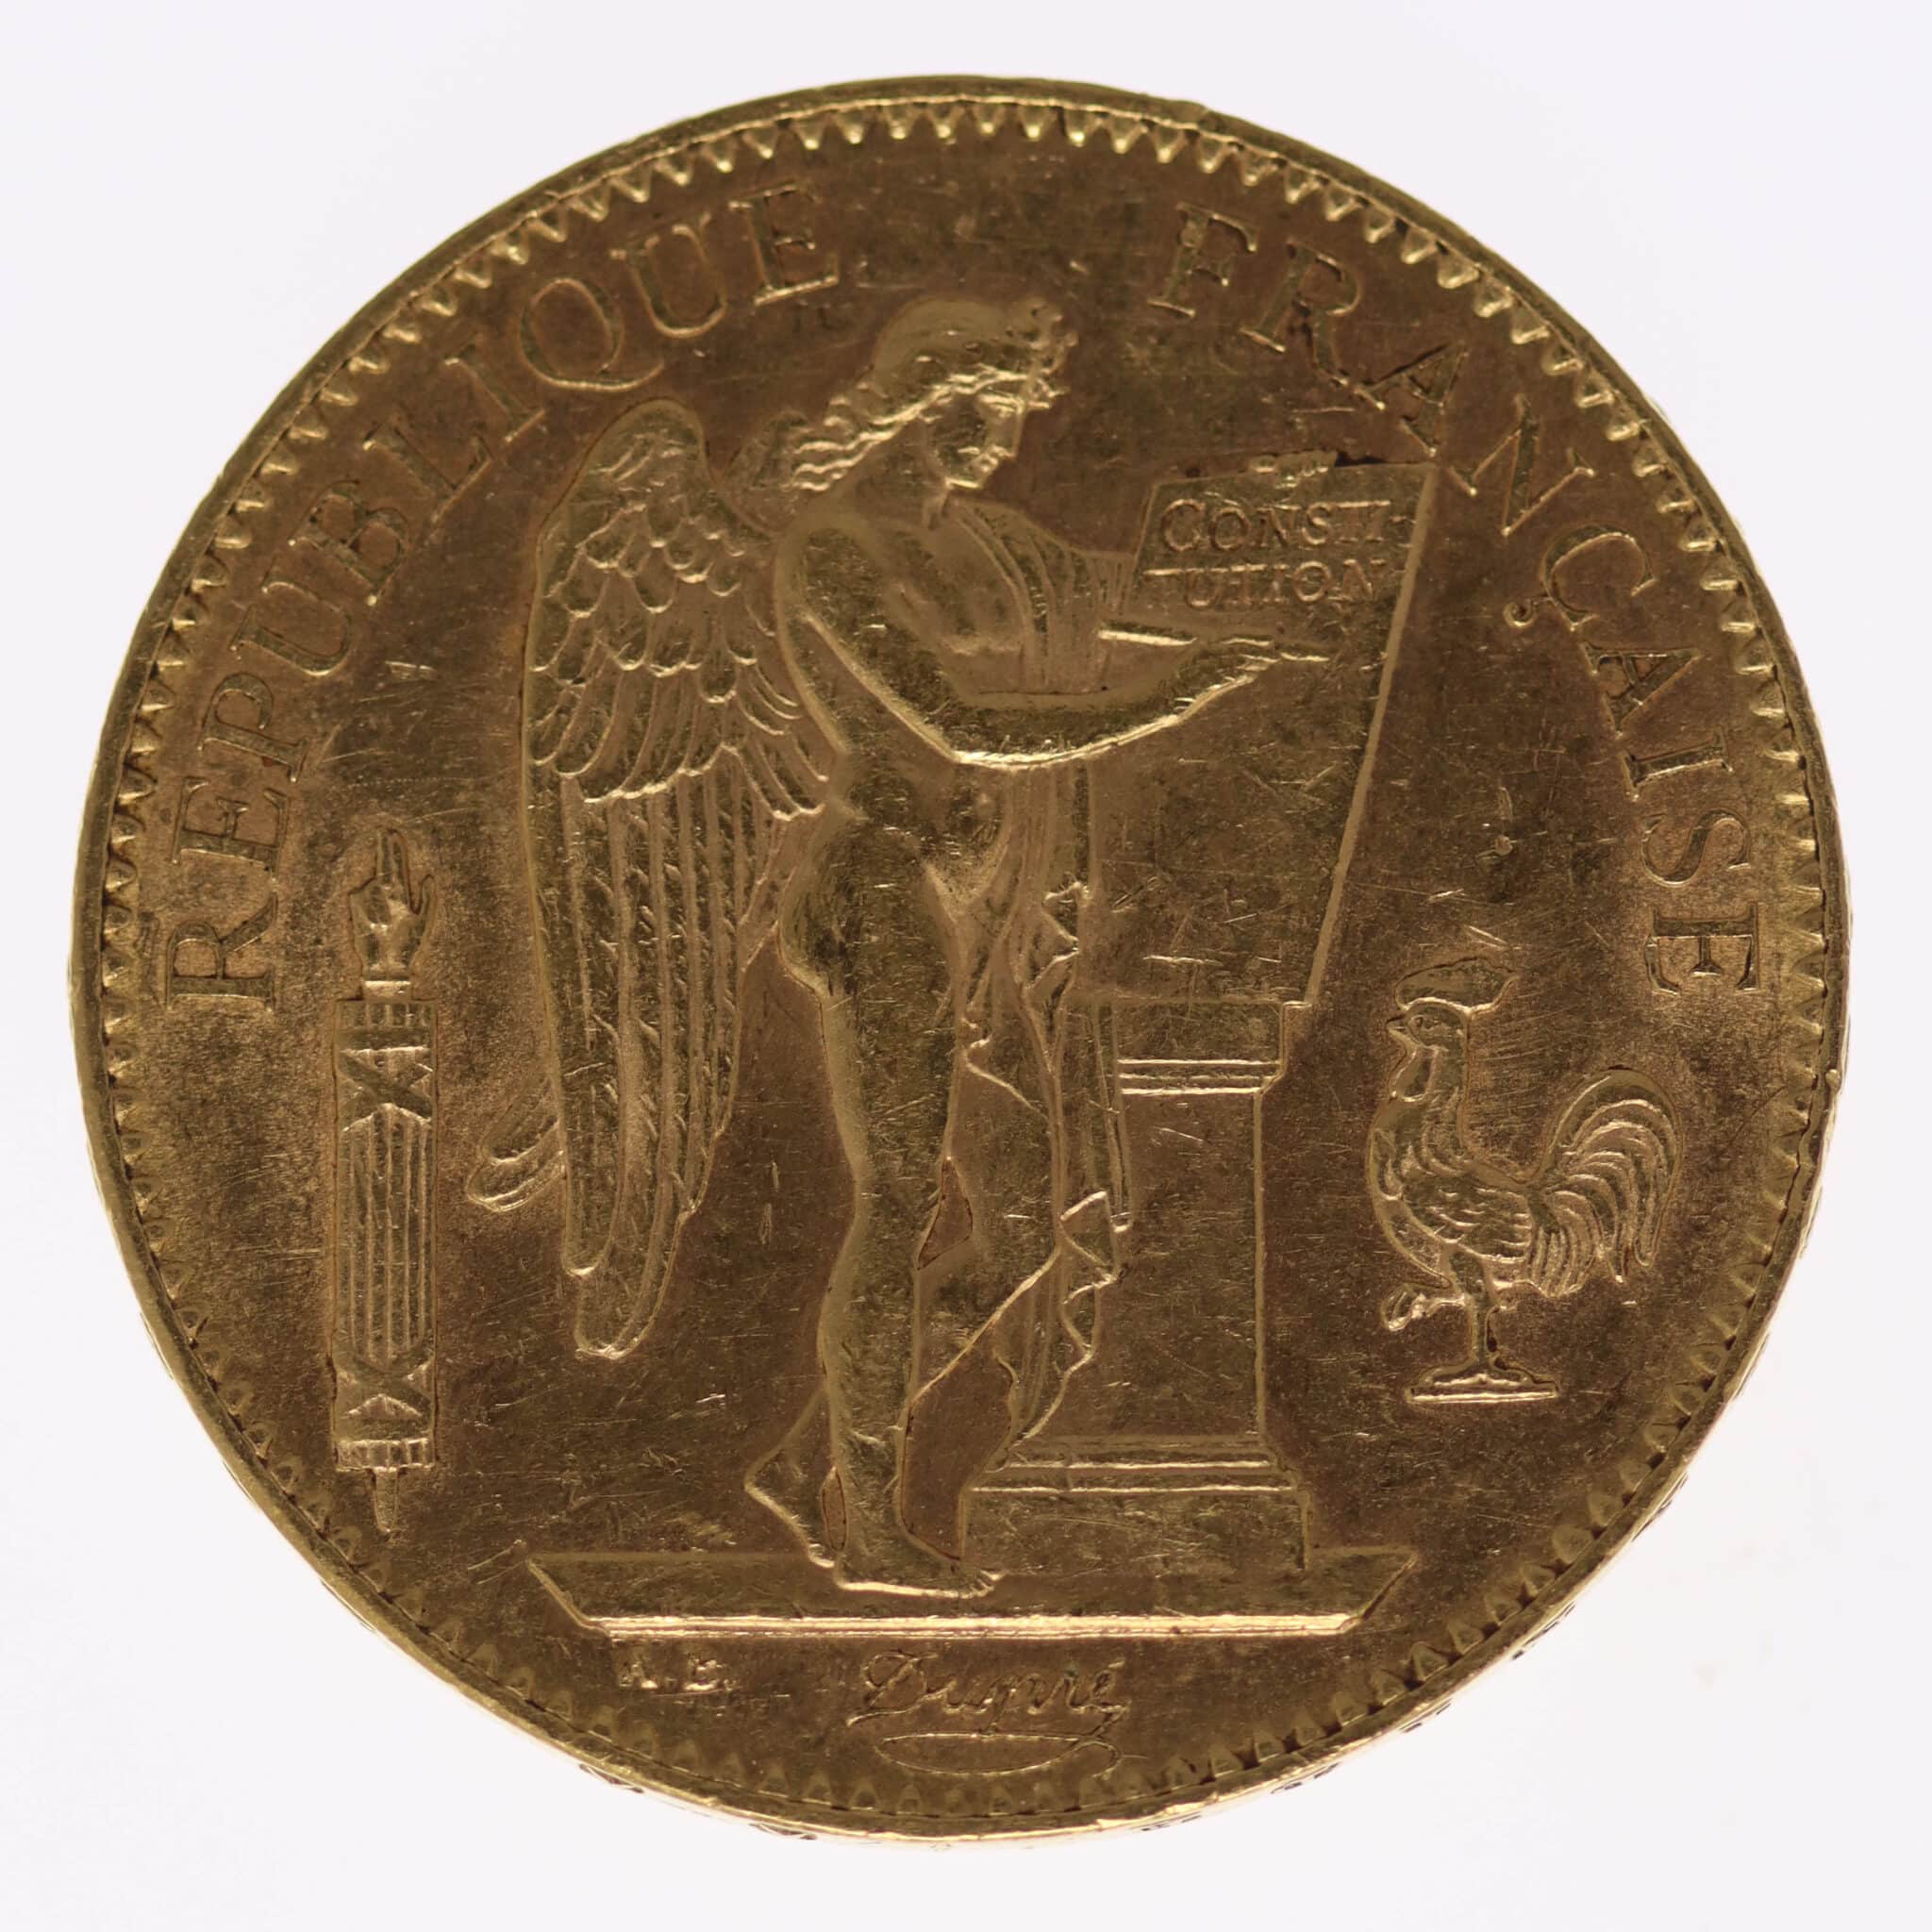 frankreich - Frankreich 100 Francs 1913 A